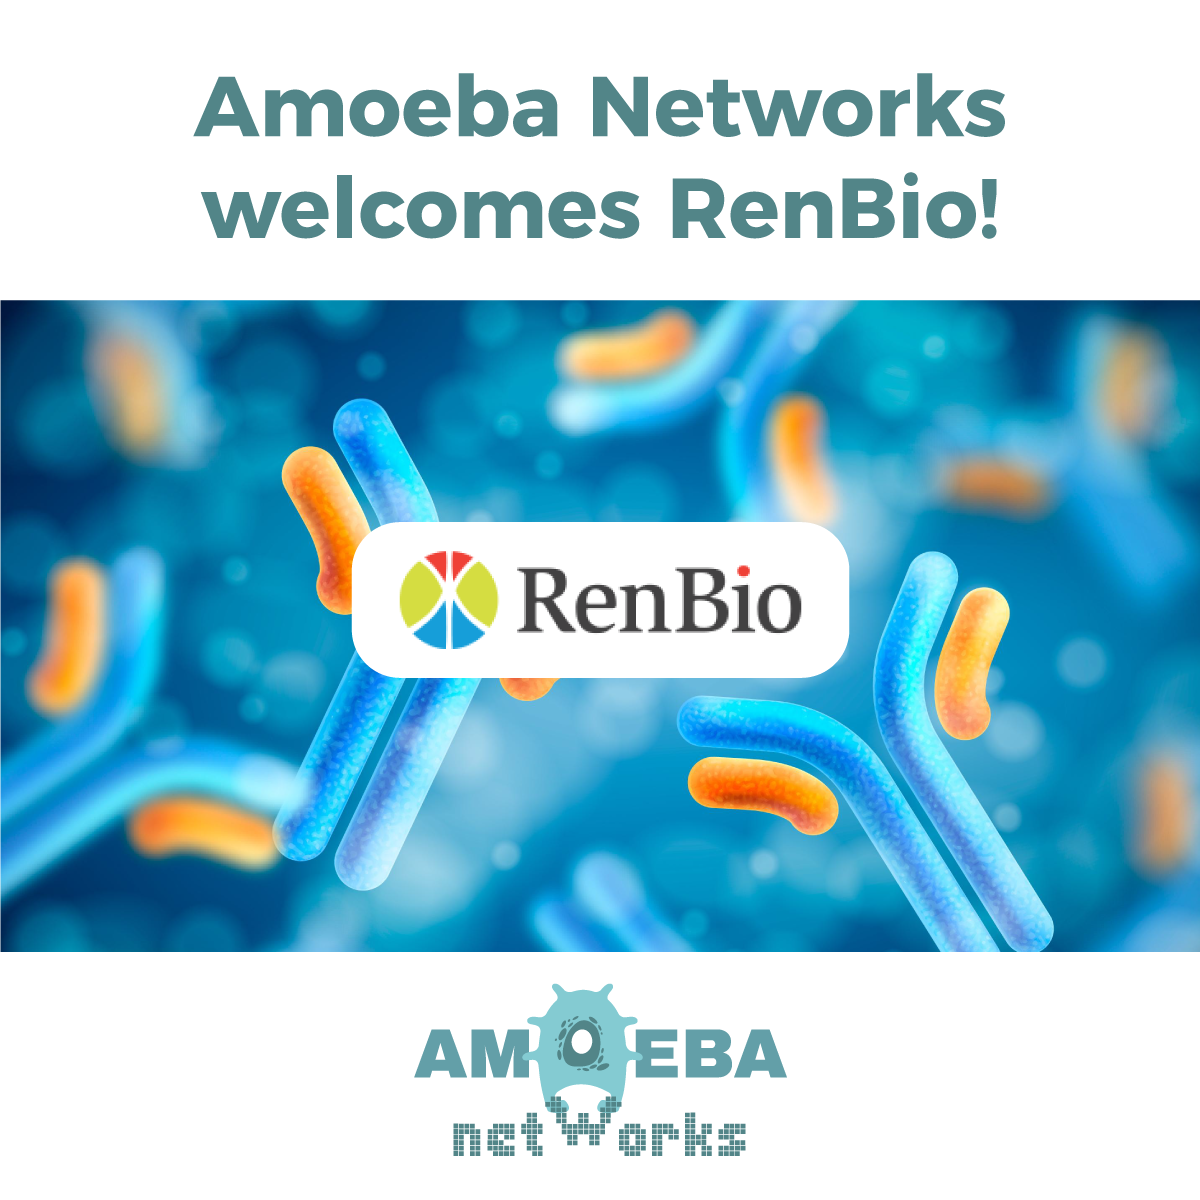 Amoeba Networks welcomes RenBio